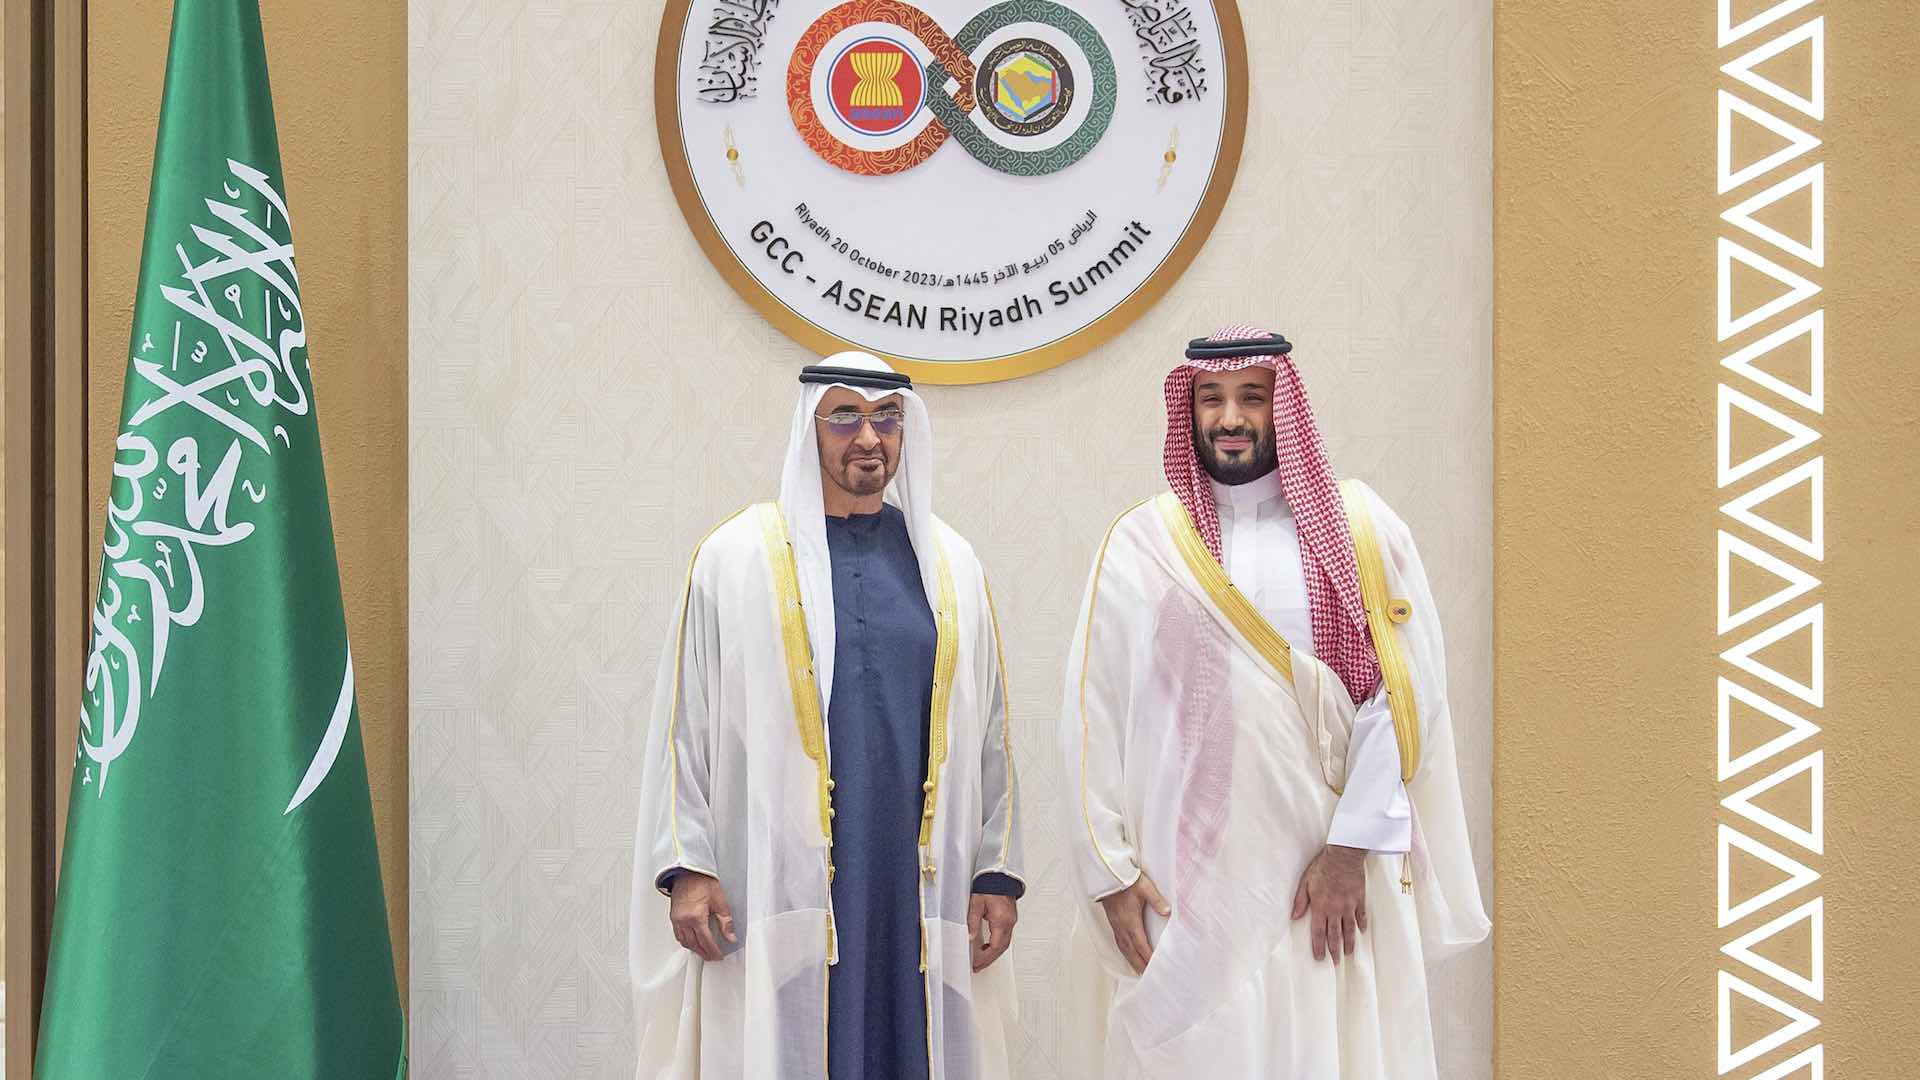 यूएई और सऊदी नेतृत्व ने जीसीसी-आसियान शिखर सम्मेलन में नए रास्ते तय किए